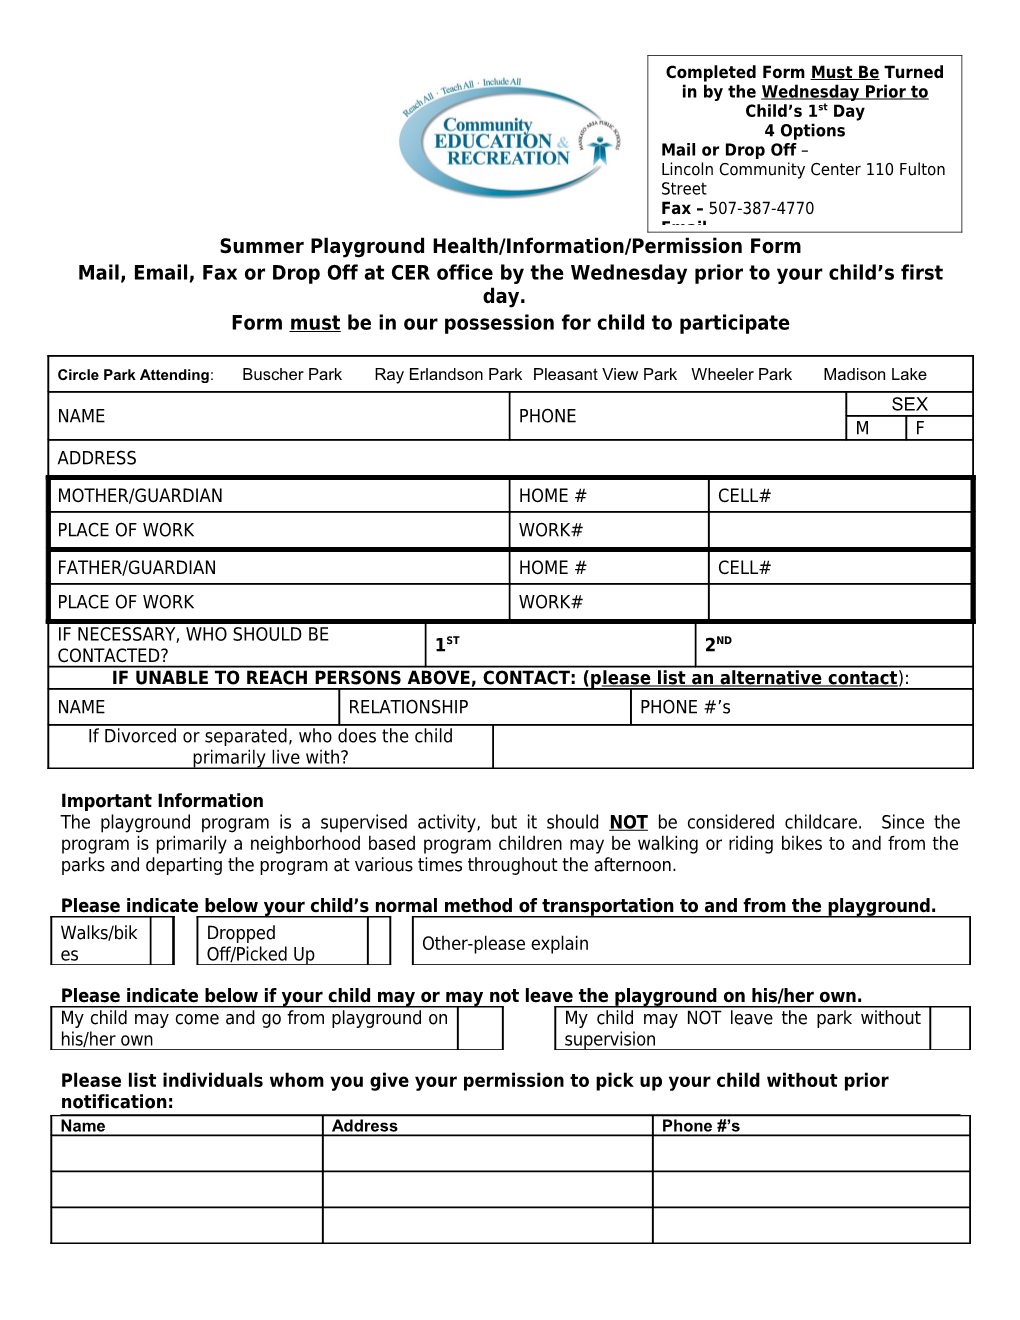 Mankato Family Ymca Health & Information Form